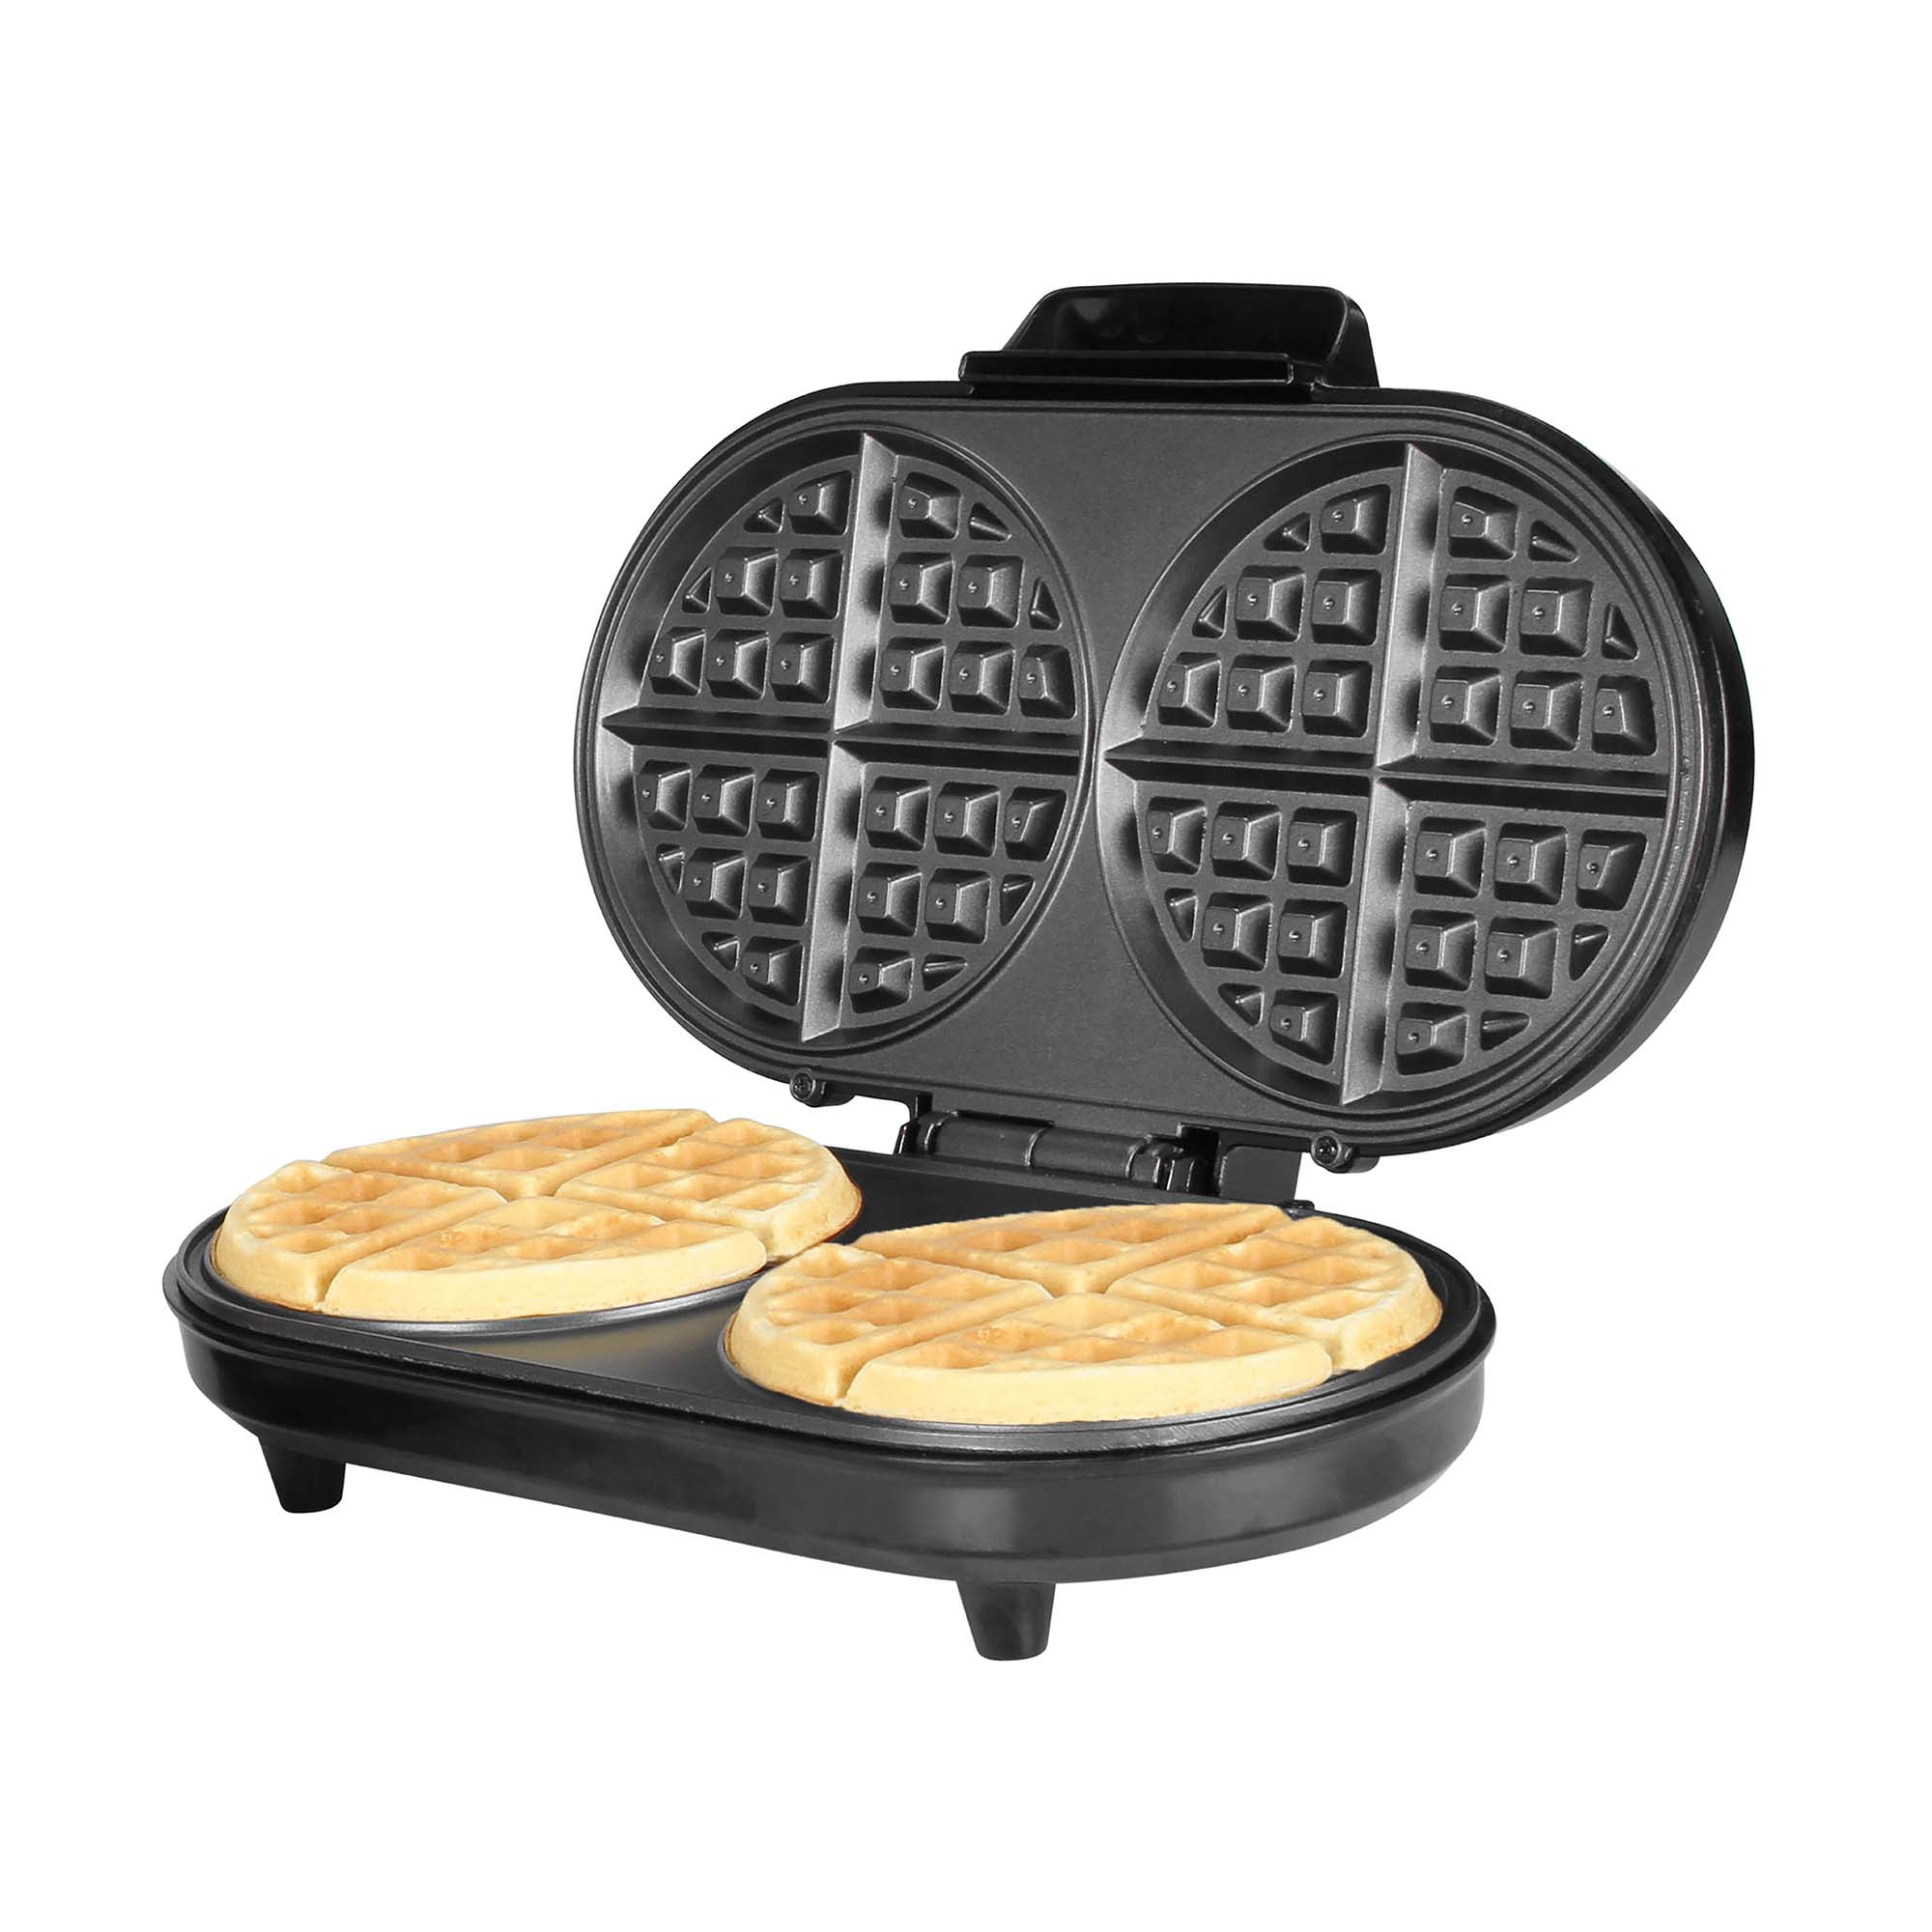 Kalorik Multi-Purpose Waffle, Grill & Sandwich Maker, Stainless